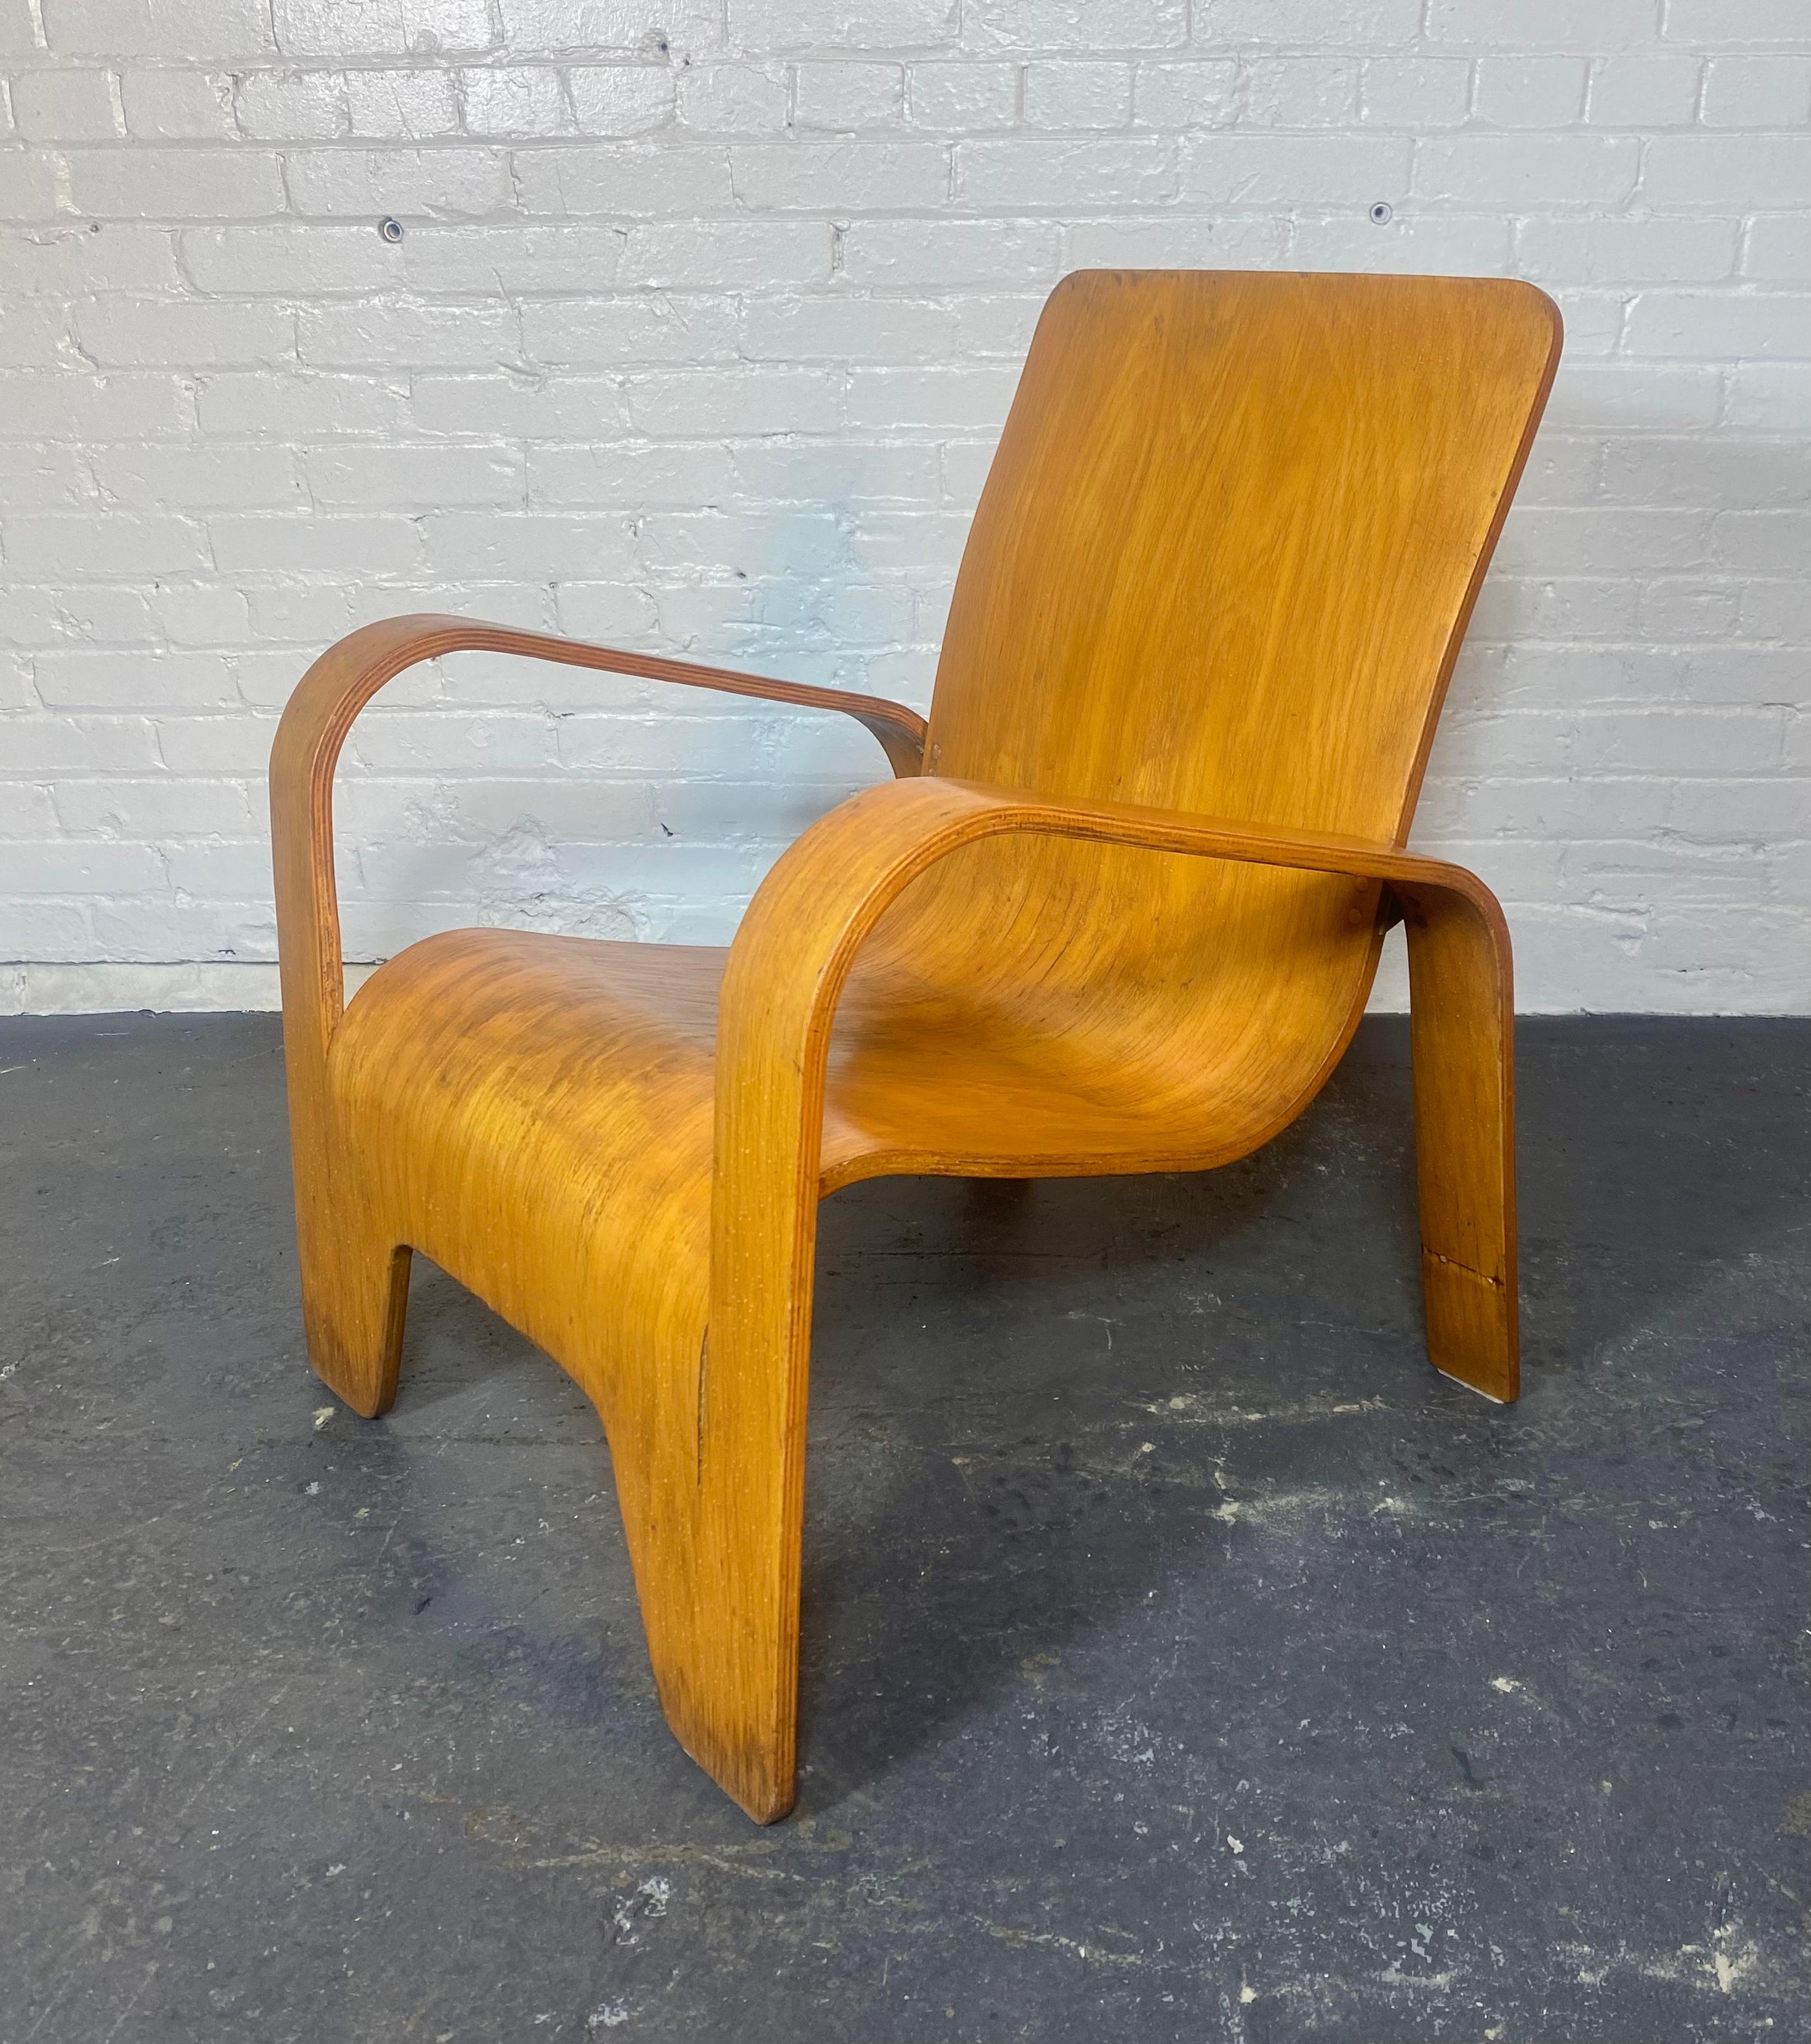 Rare chaise longue en bois LaWo1 par Han Pieck pour Lawo Ommen, Pays-Bas. Cette rare chaise moderne hollandaise est brillamment conçue et fabriquée à partir de plusieurs couches de contreplaqué de bouleau. Les pieds du dossier sont fixés au dossier